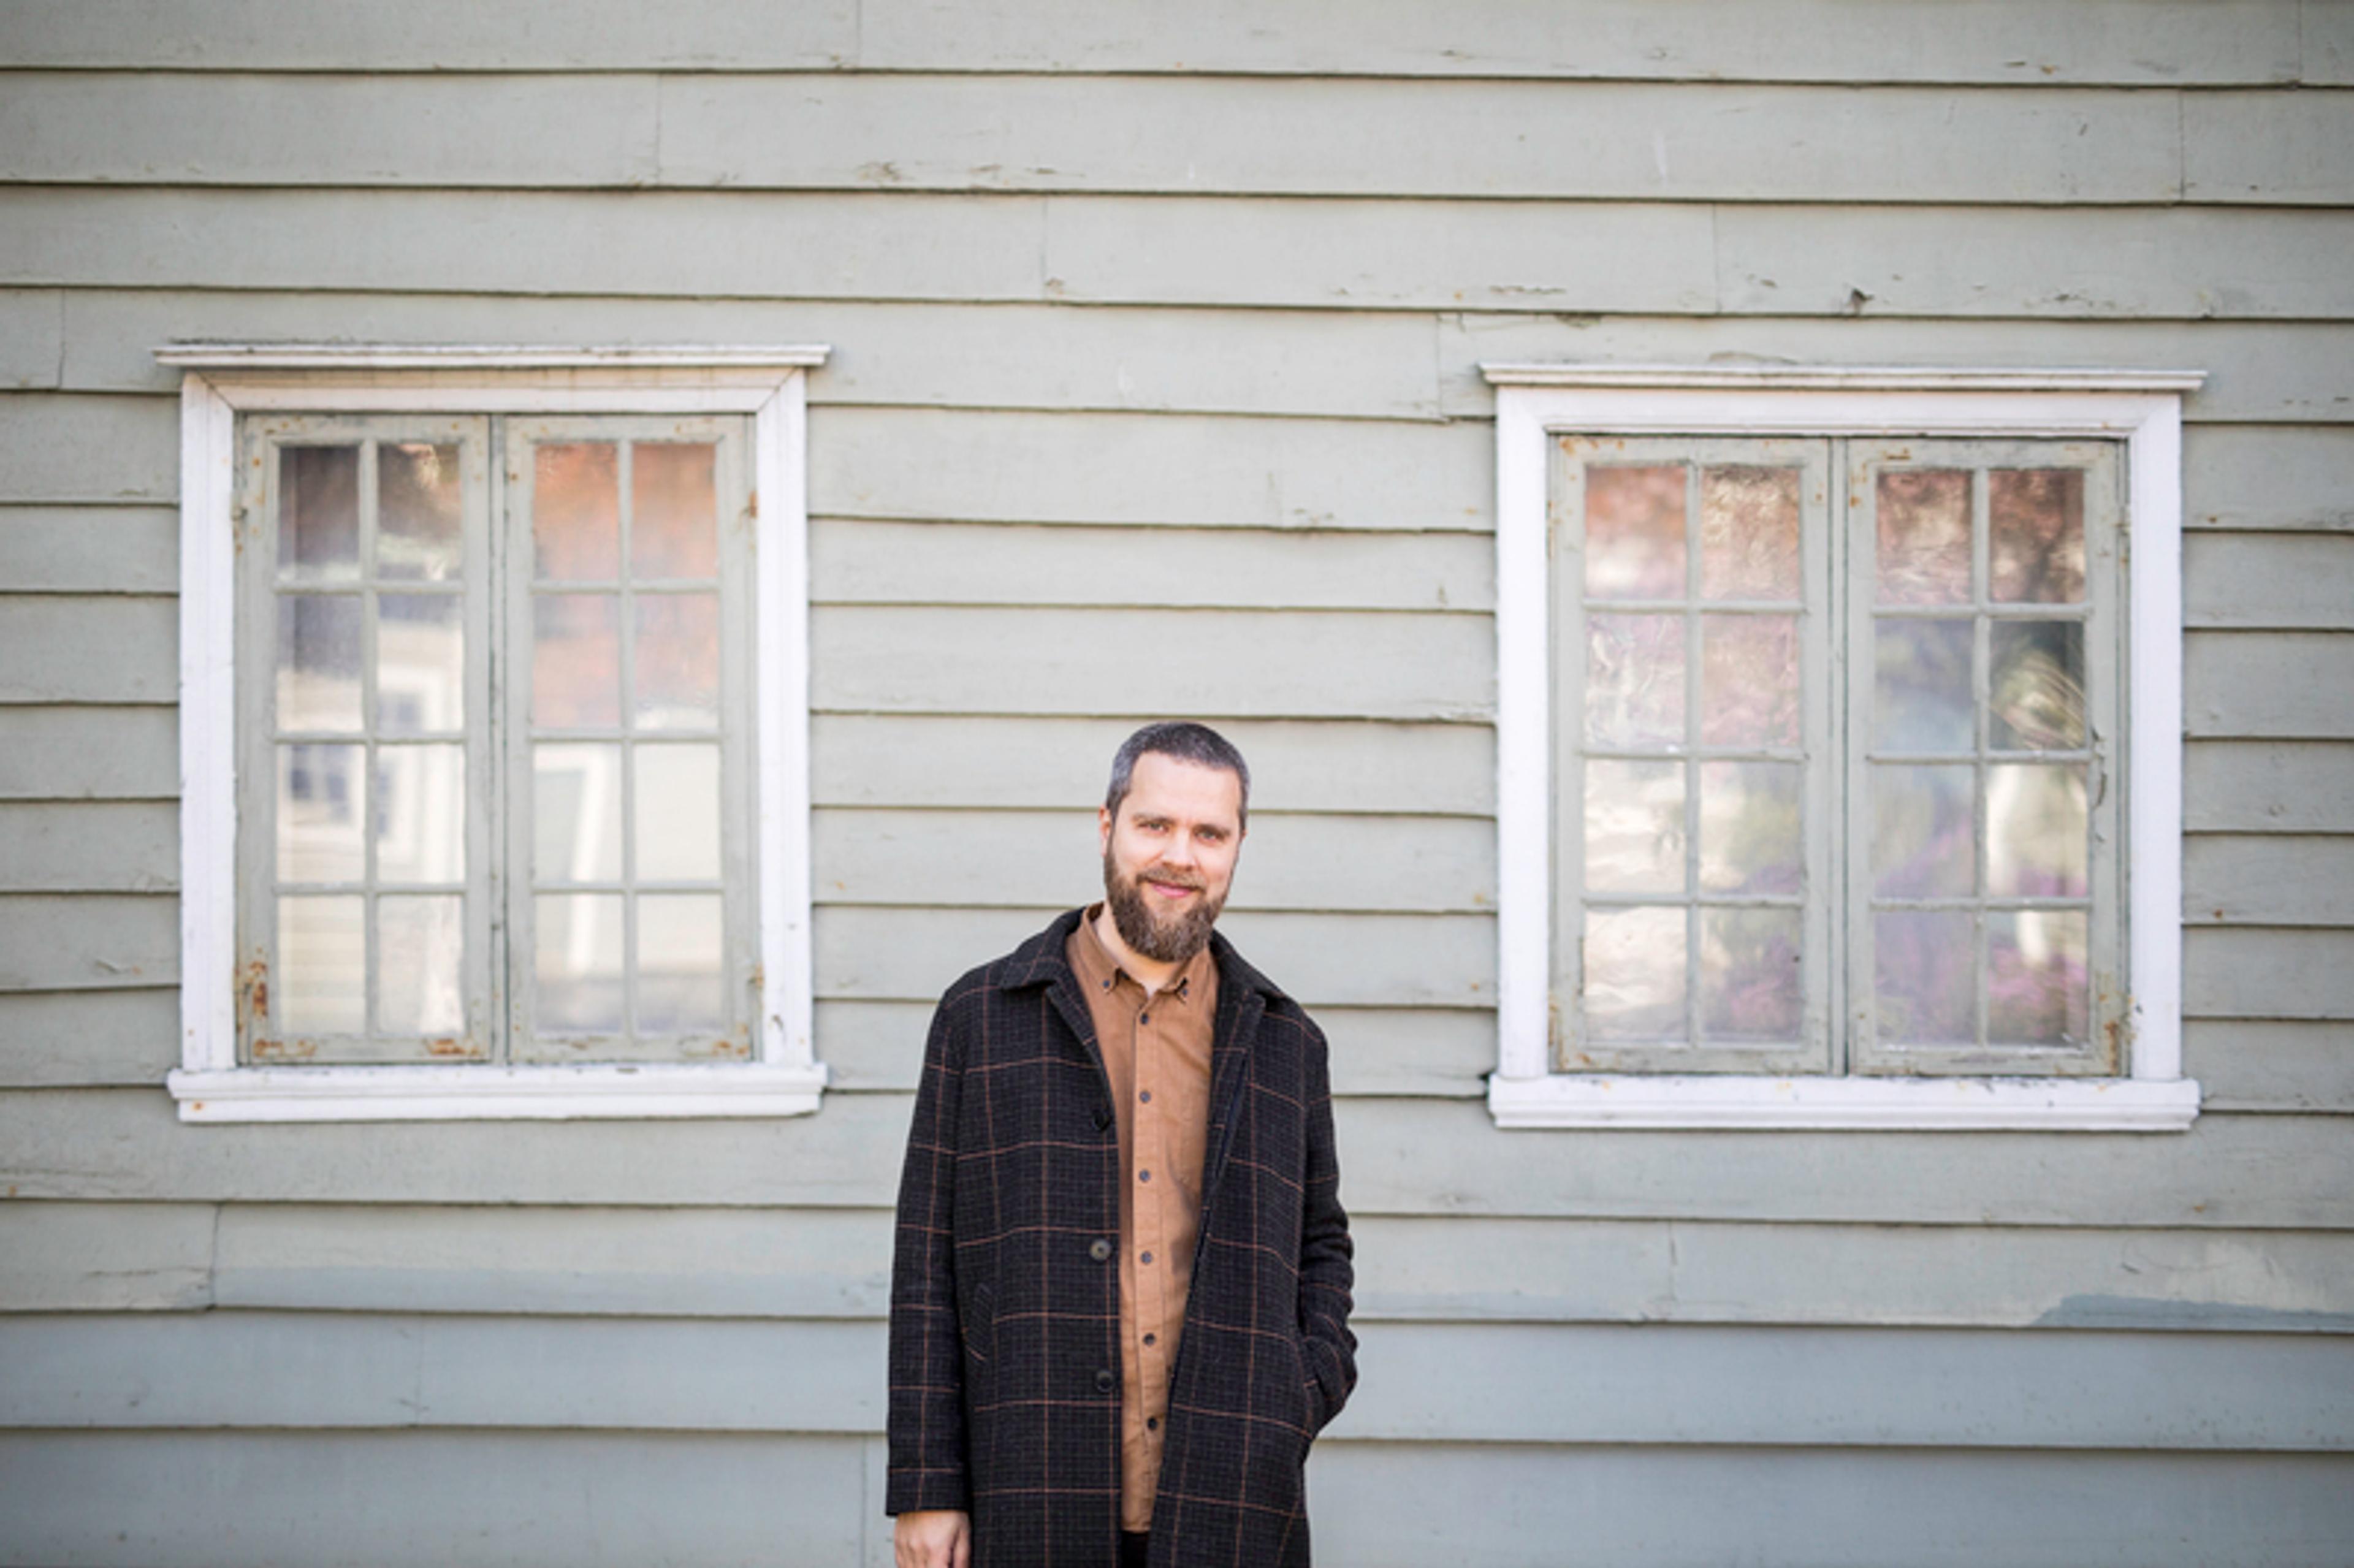 Komponisten Ørjan Matre står foran en lysgrønn vegg. Han ser i kamera og smiler.